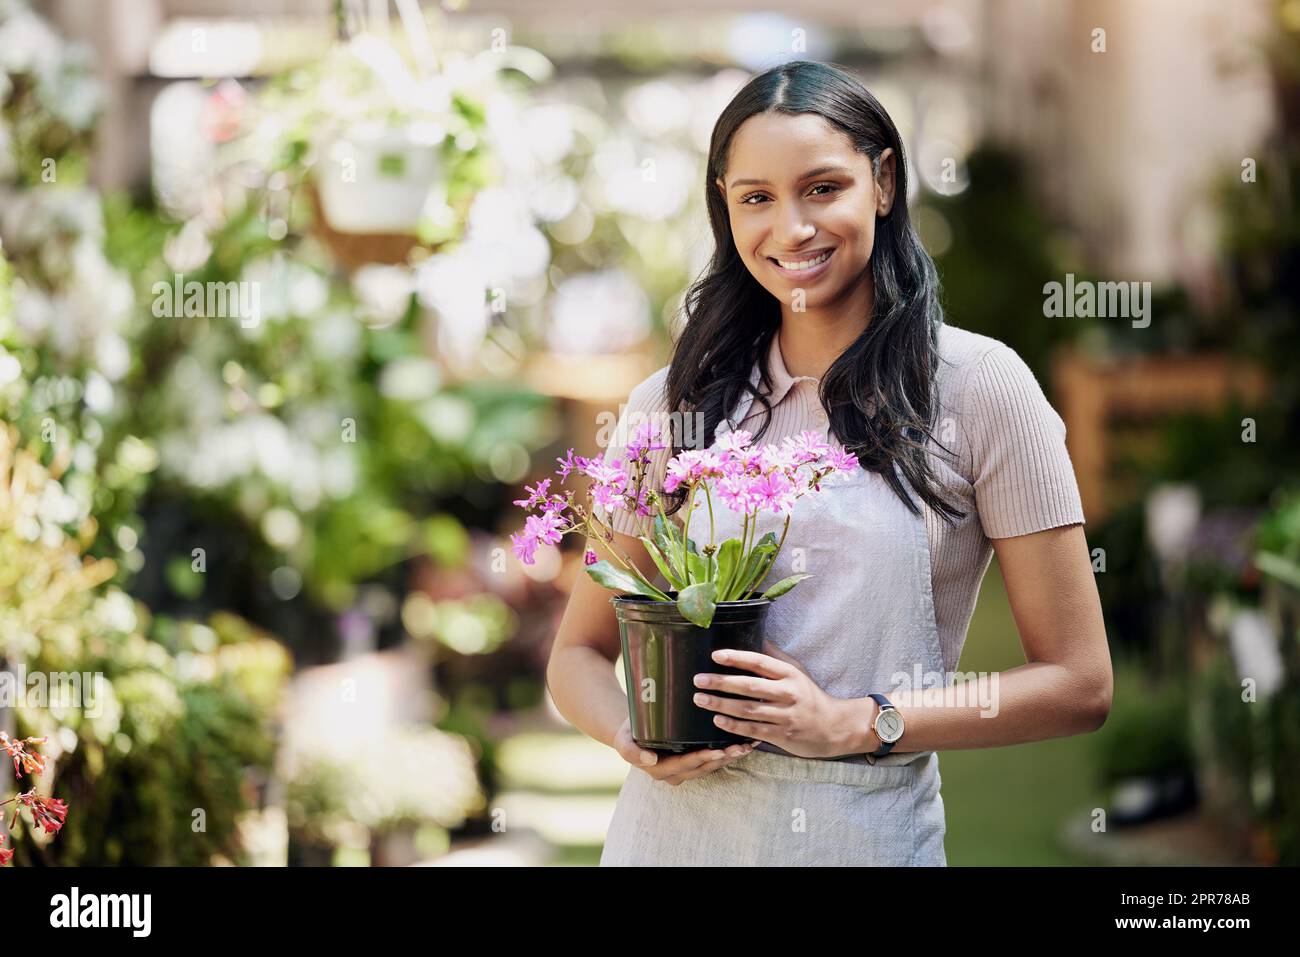 Dame der Blumen. Porträt eines jungen Geschäftseigentümers, der eine Topfpflanze in einer Gärtnerei hält. Stockfoto